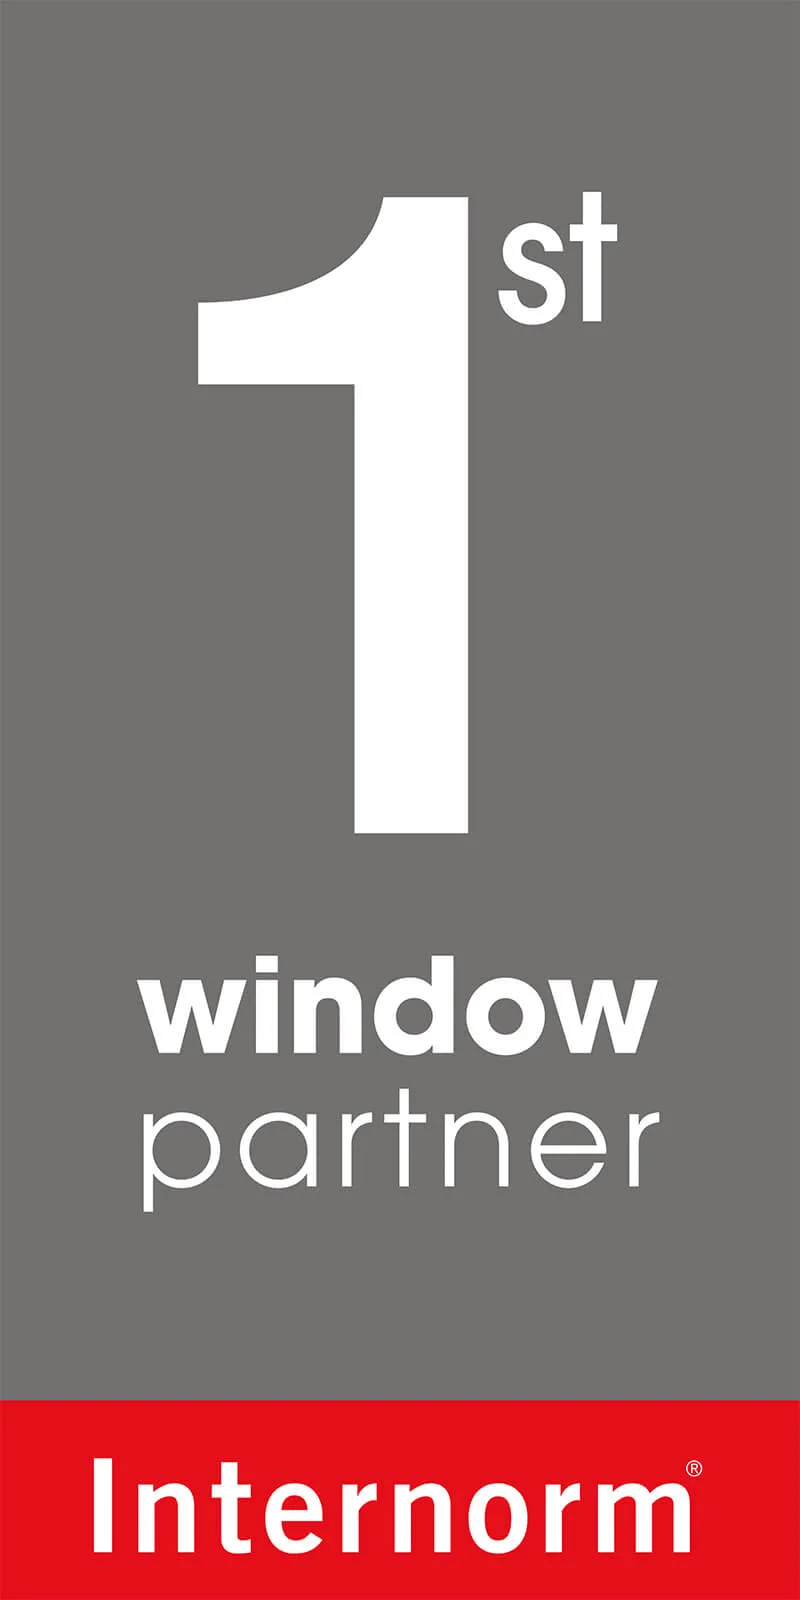 logo-certificazione-1st-window-partner-internorm.jpg